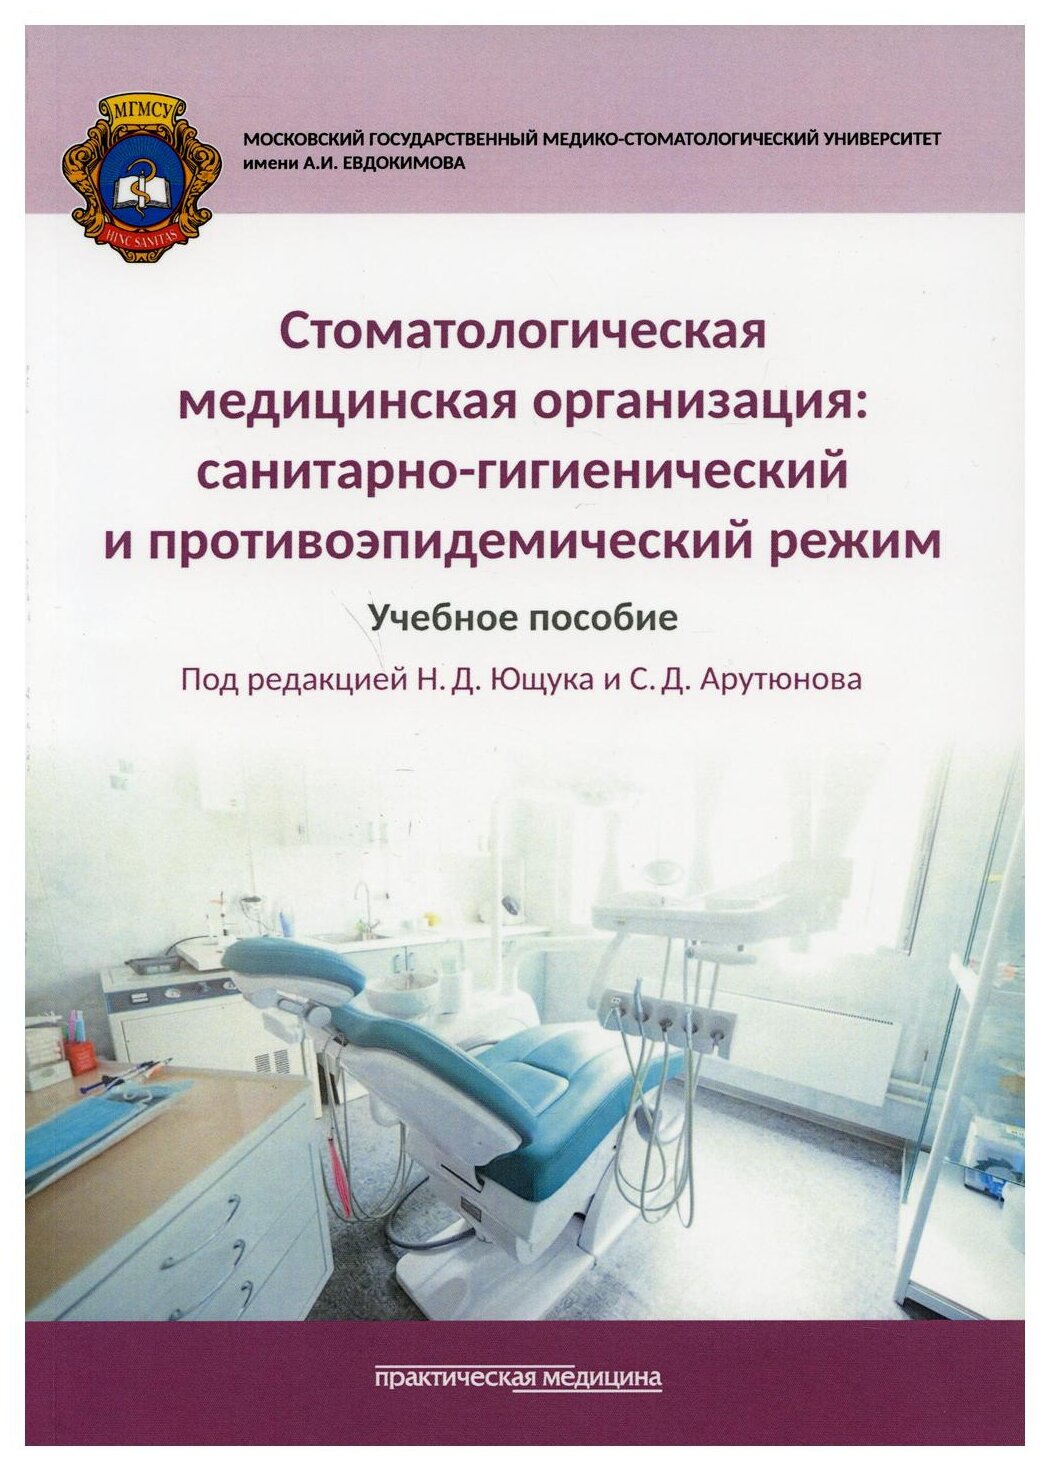 Стоматологическая медицинская организация: санитарно-гигиенический и противоэпидемический режим: Учебное пособие